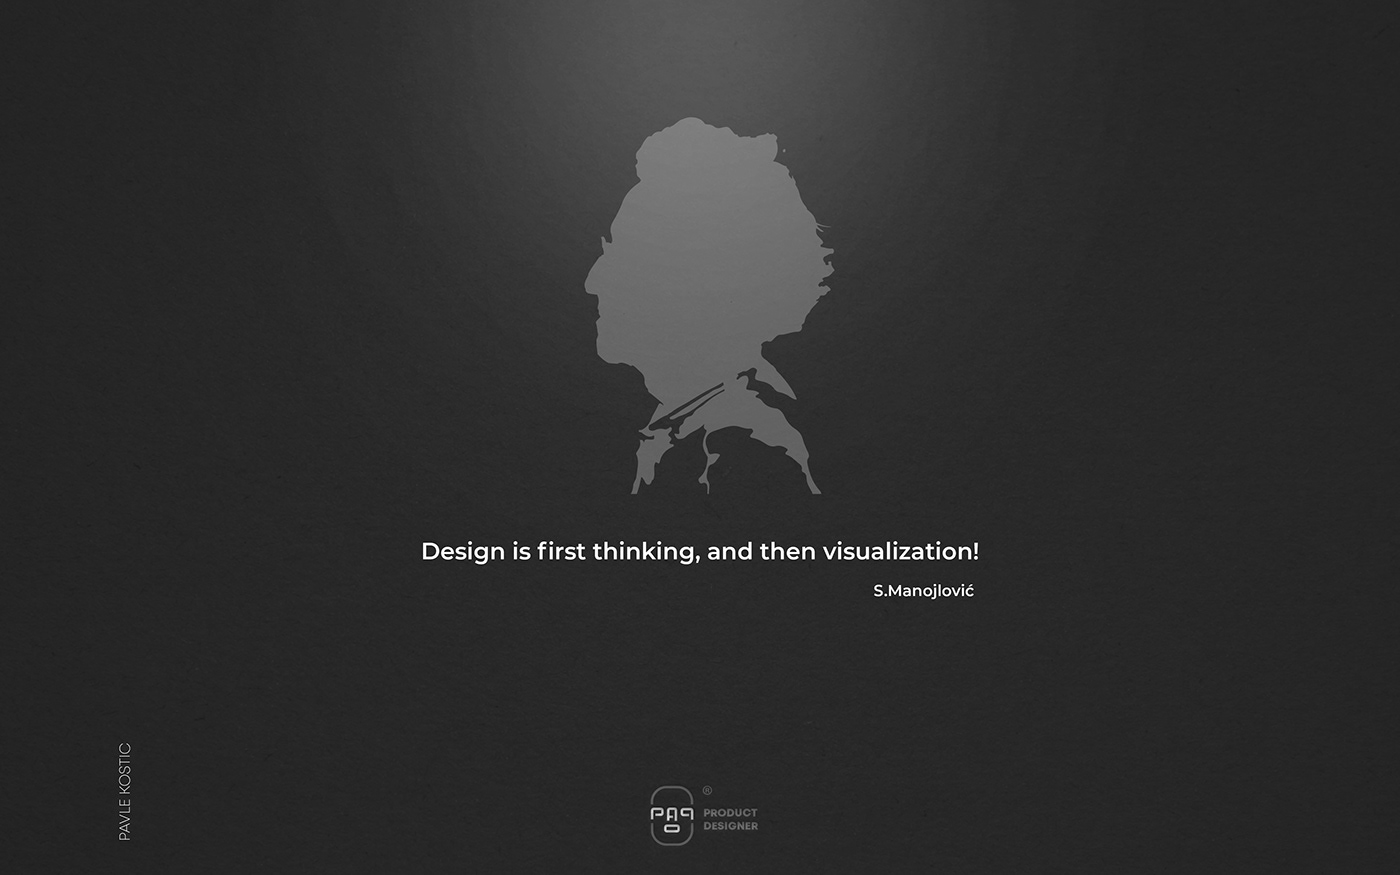 design graphic design  industrial industrial design  Porduct Design Portfolio portfolio product product design 